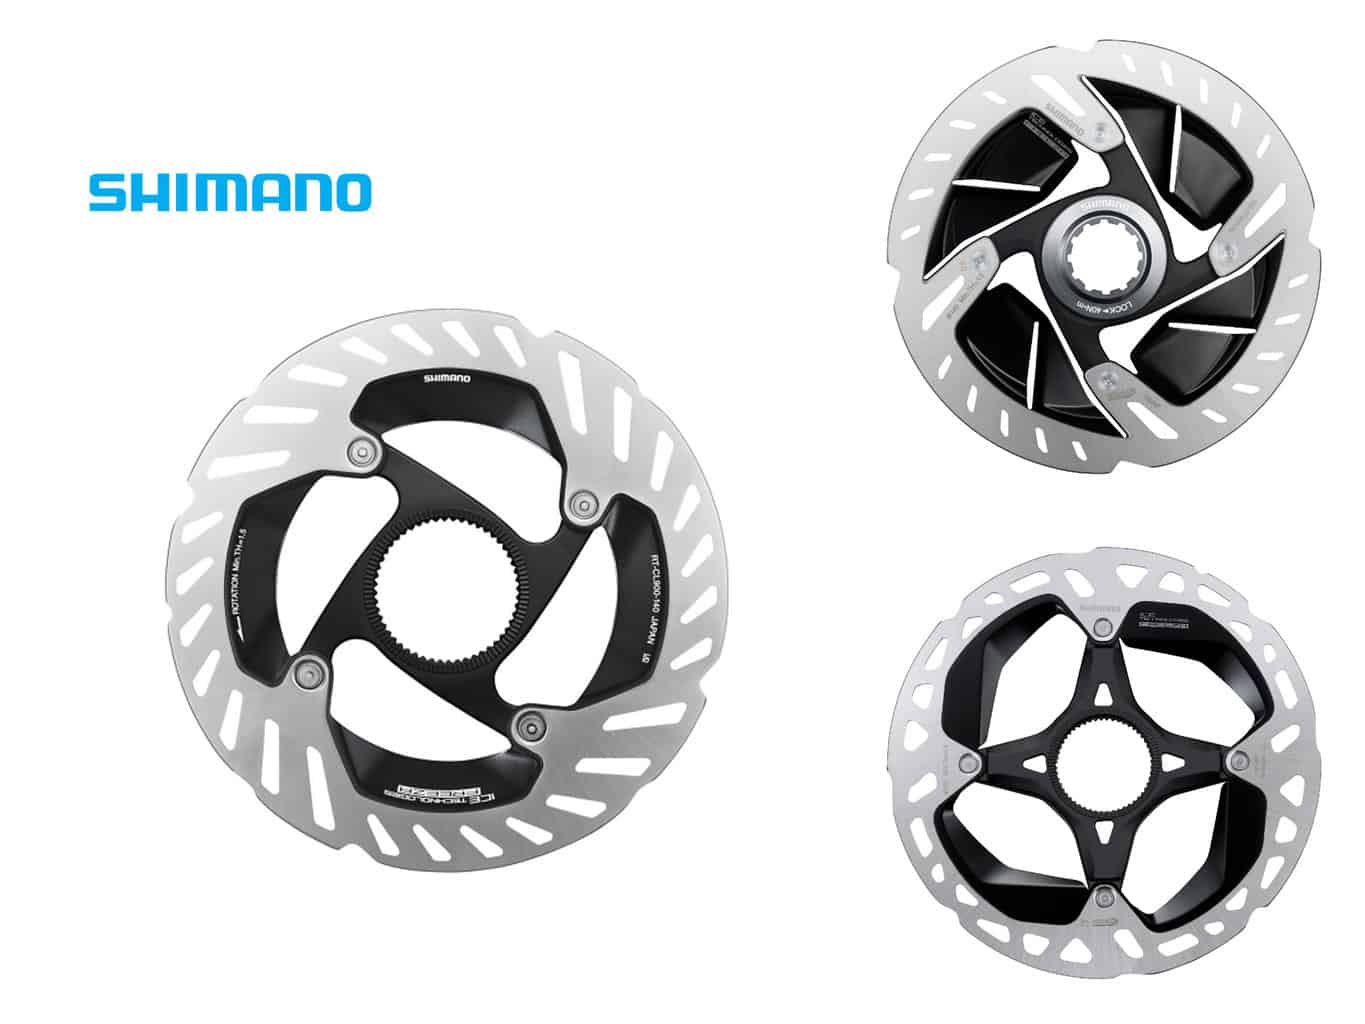 Shimano XTR vs Dura-Ace Rotors Featured